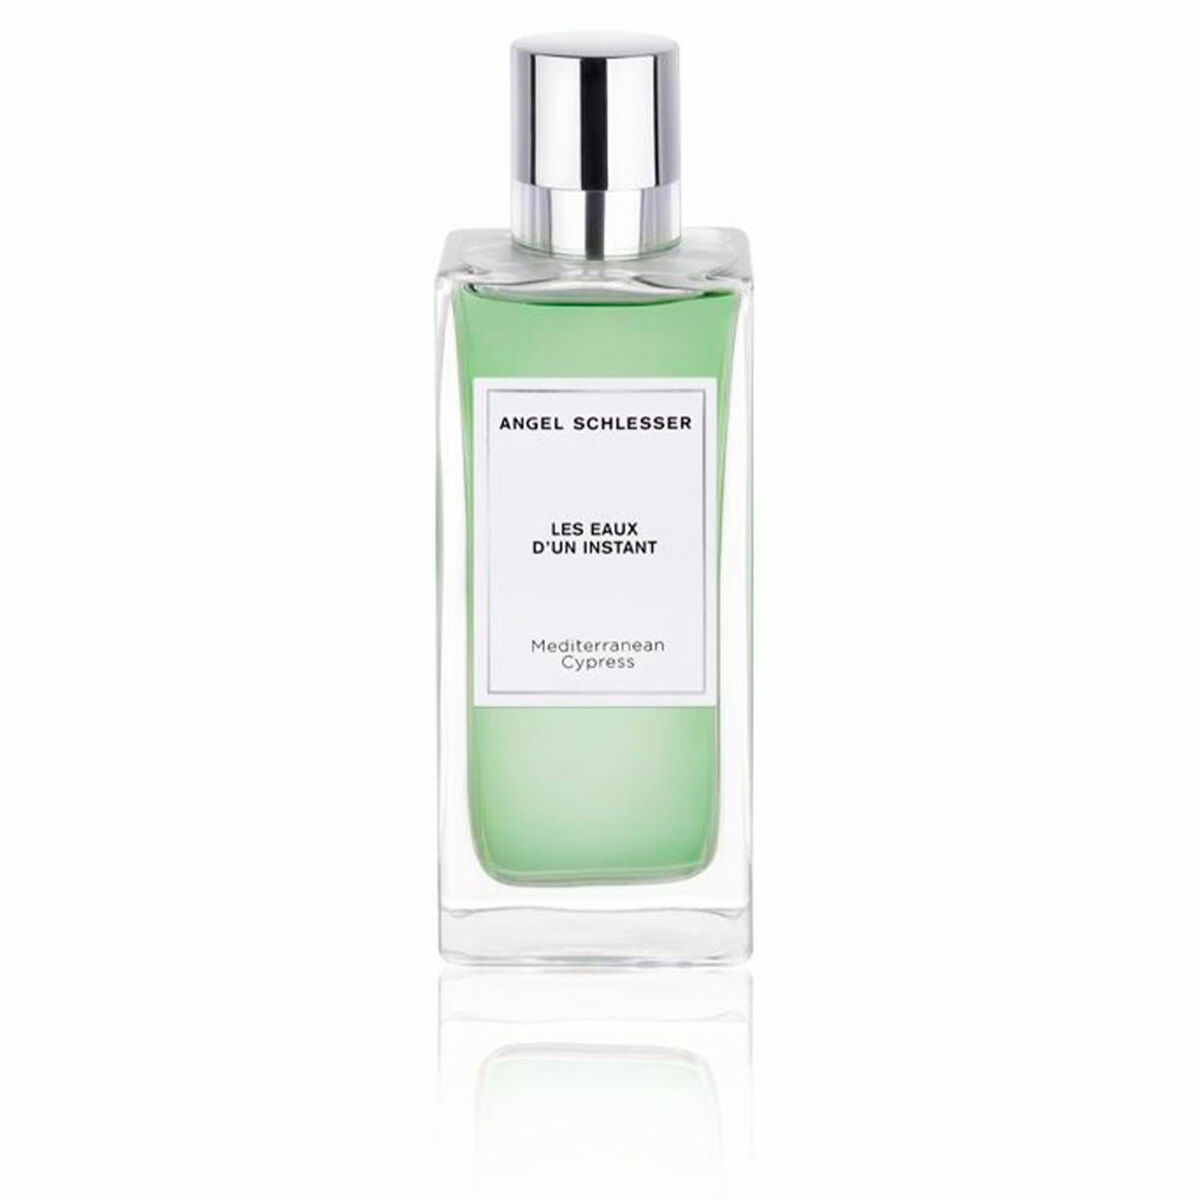 Unisex parfume Angel Schlesser EDT Les Eaux D'un Instant Mediterranean Cypress 150 ml